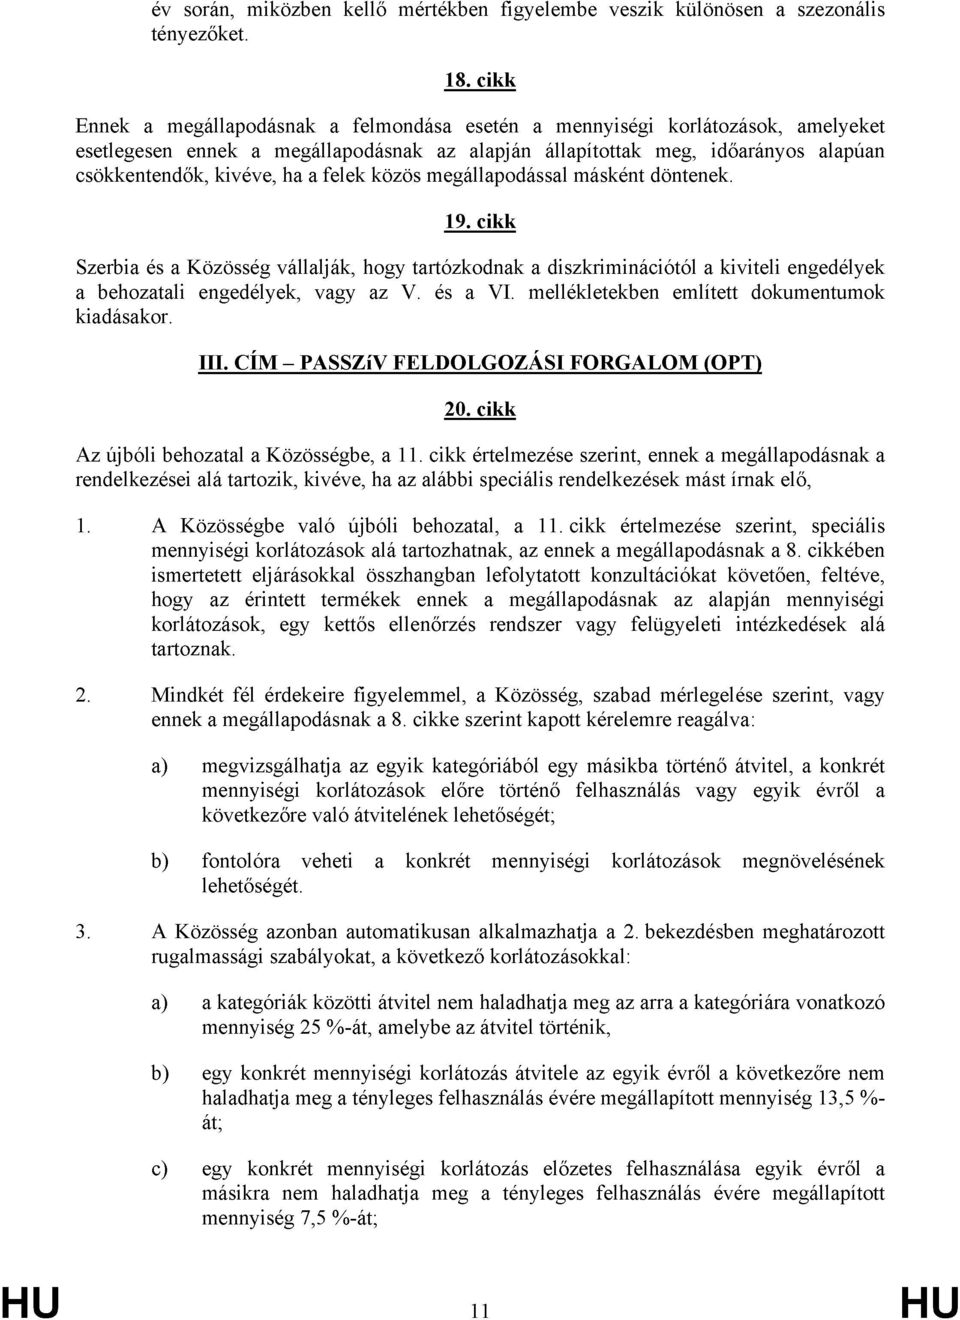 felek közös megállapodással másként döntenek. 19. cikk Szerbia és a Közösség vállalják, hogy tartózkodnak a diszkriminációtól a kiviteli engedélyek a behozatali engedélyek, vagy az V. és a VI.